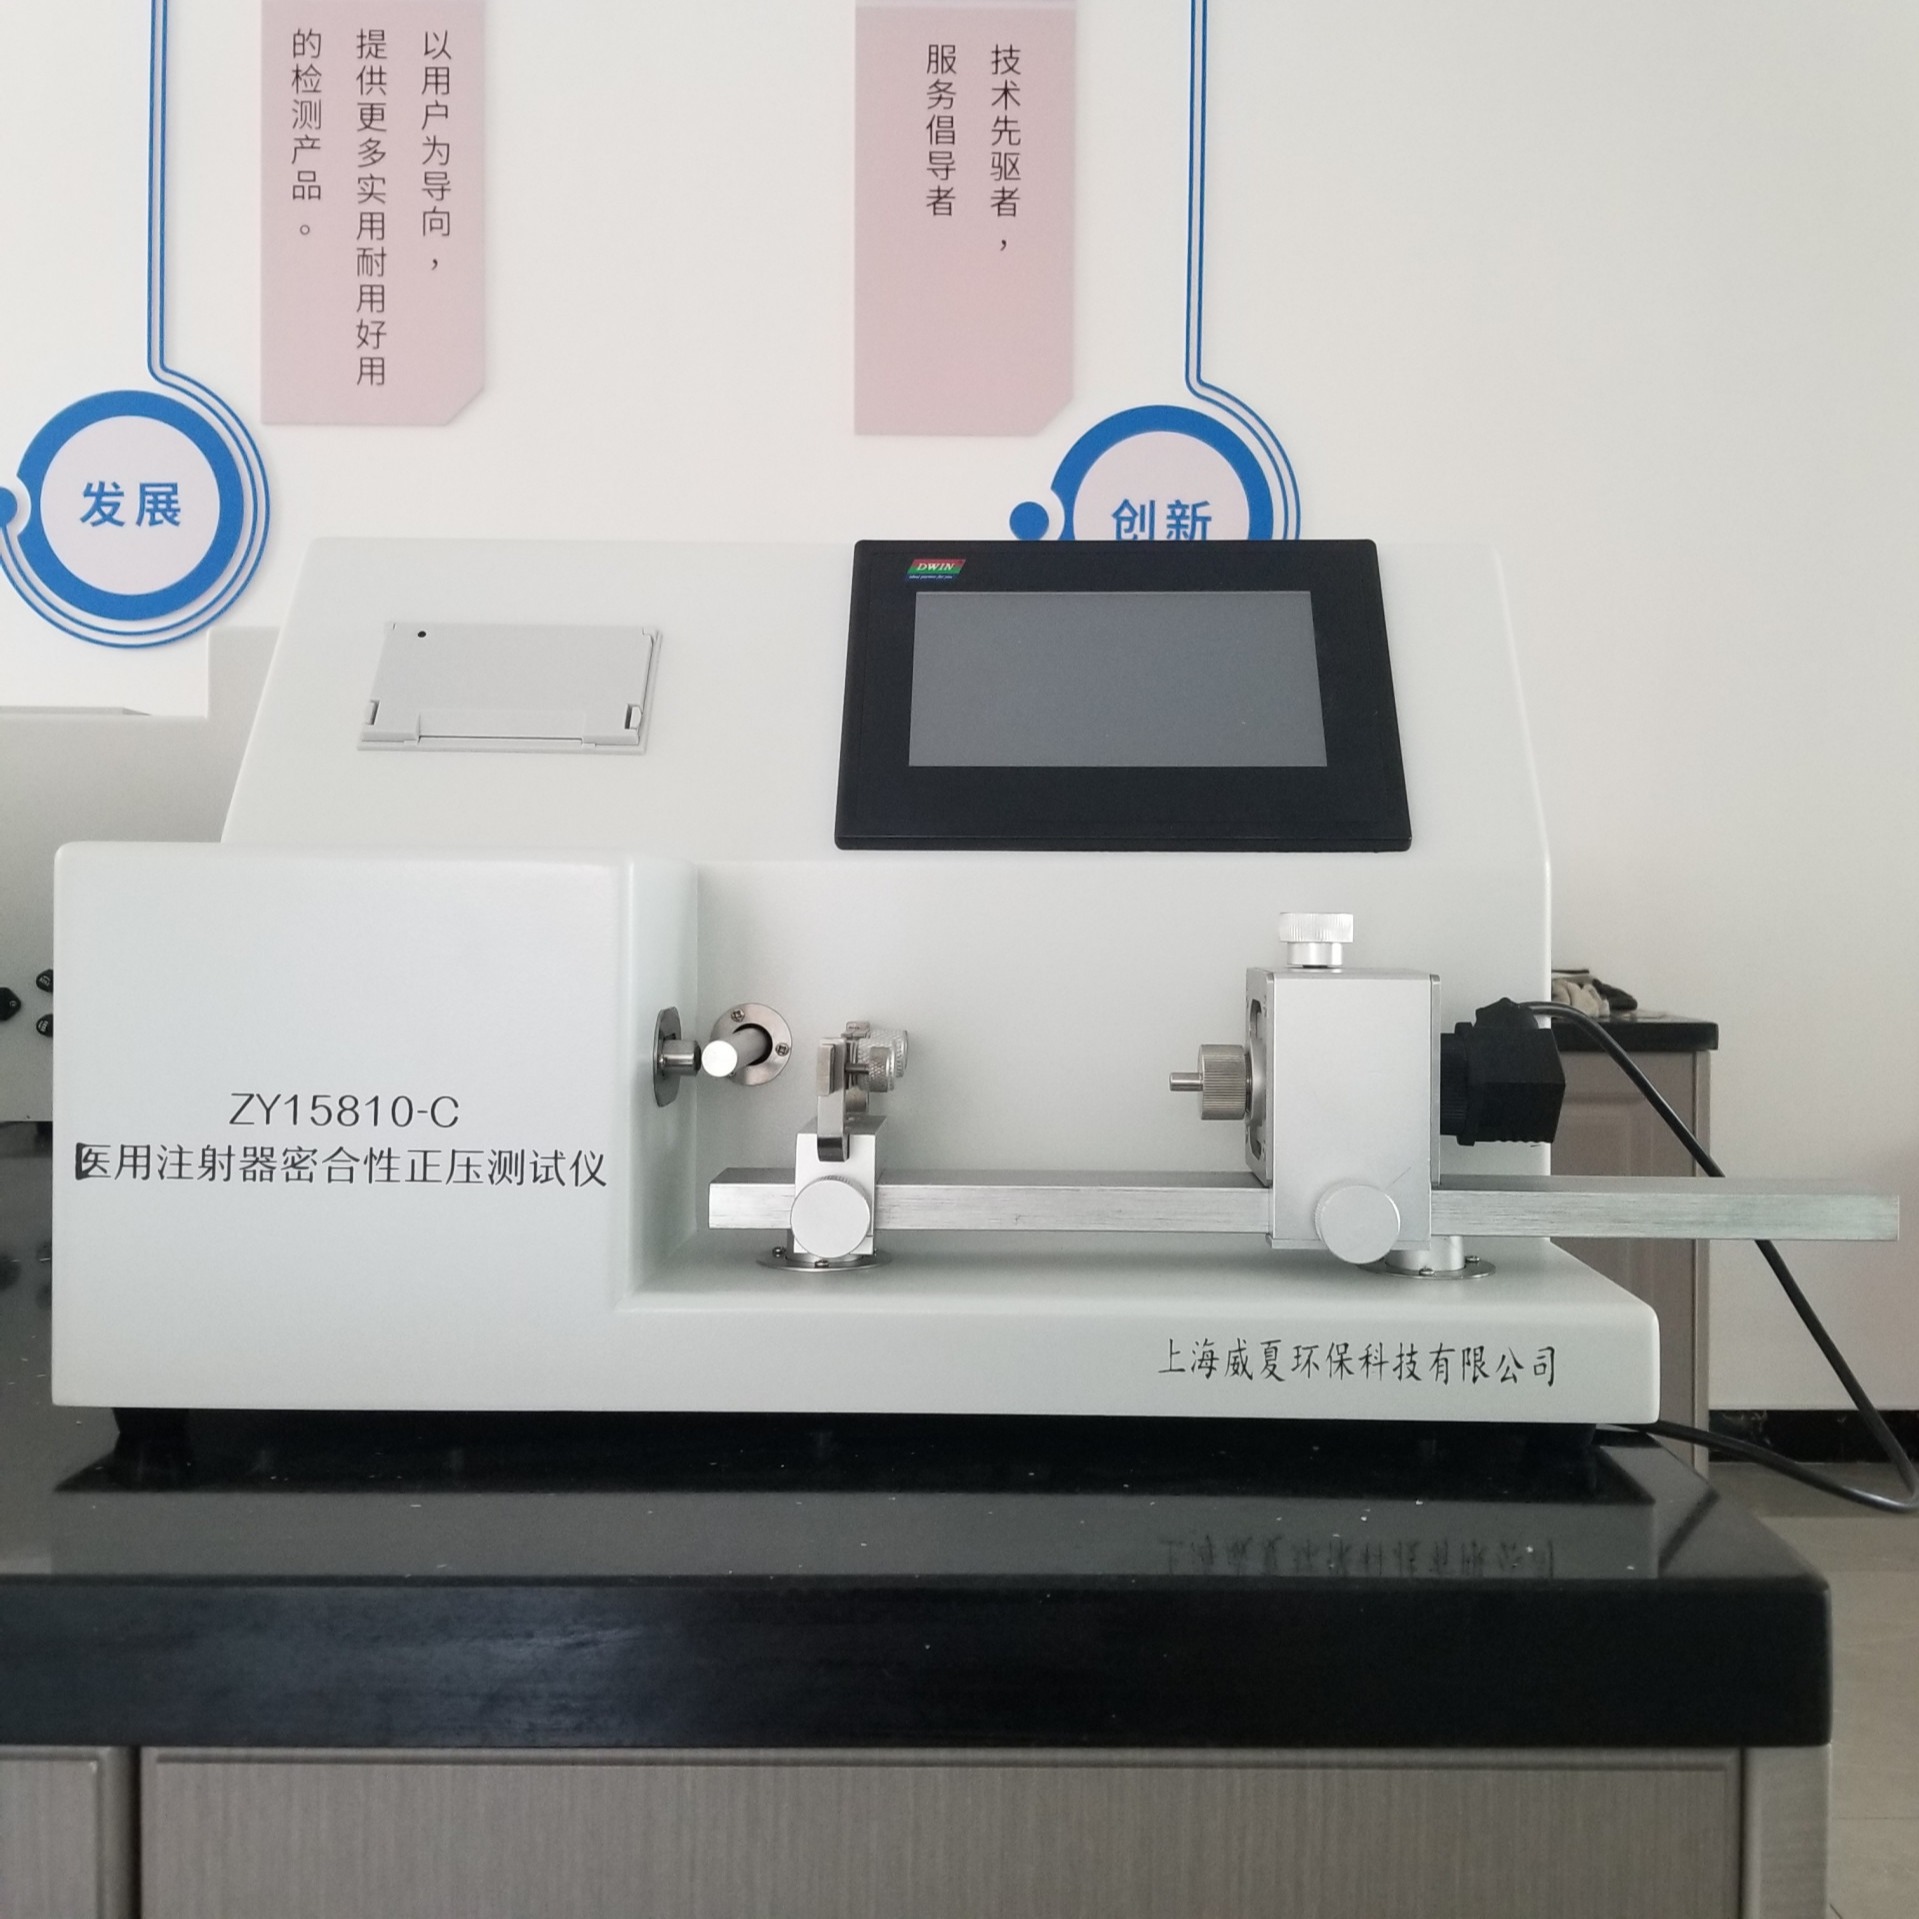 杭州威夏 ZY15810-C 注射器密合性正压测试仪器 测定医用注射器密合性正压性能物理特性